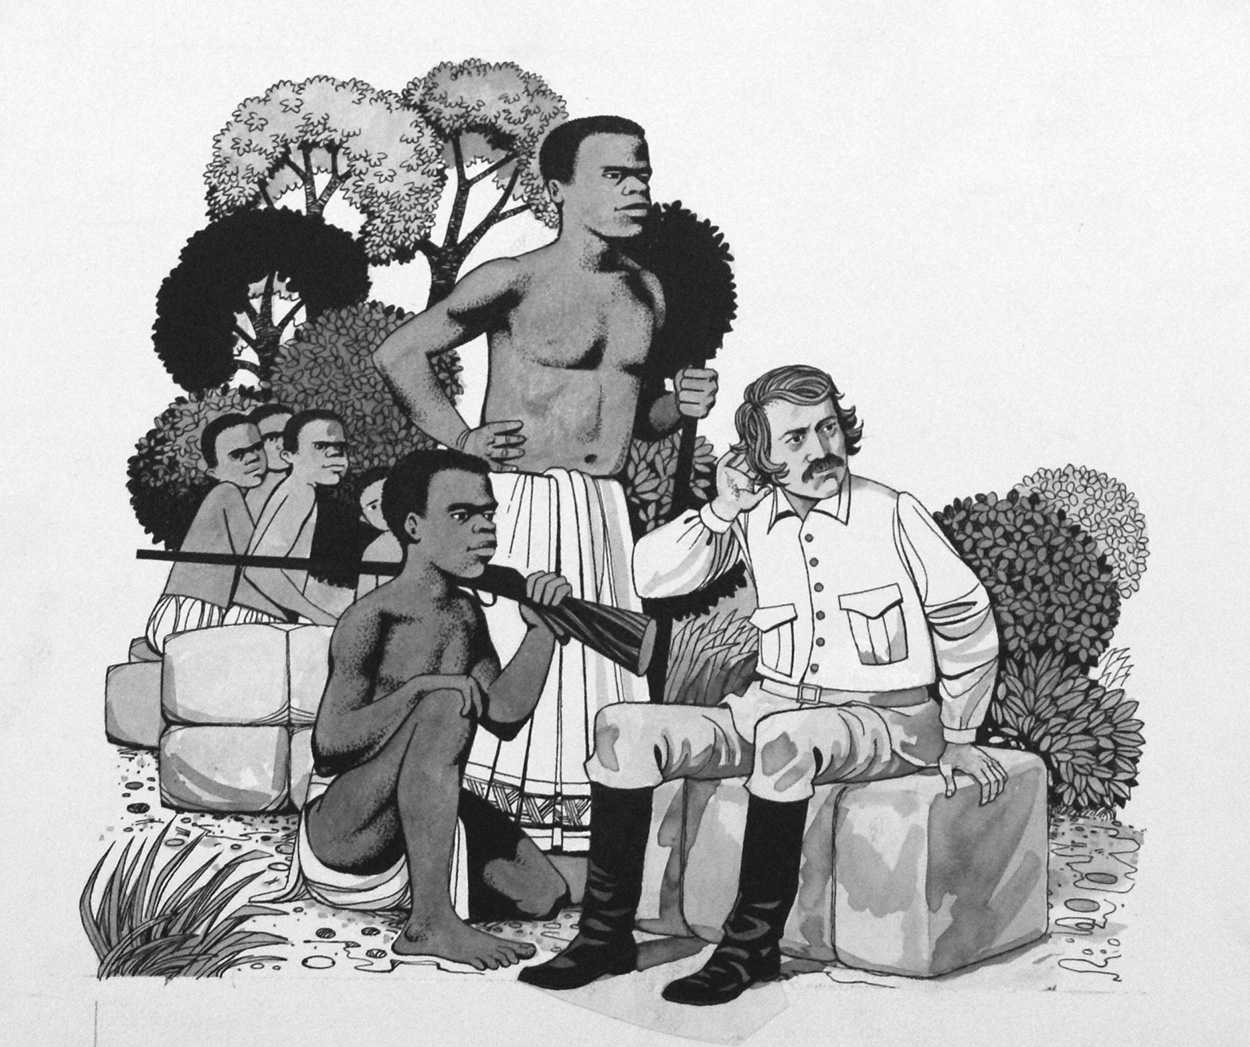 A Light in Darkest Africa - David Livingstone (Original) art by Richard Hook Art at The Illustration Art Gallery